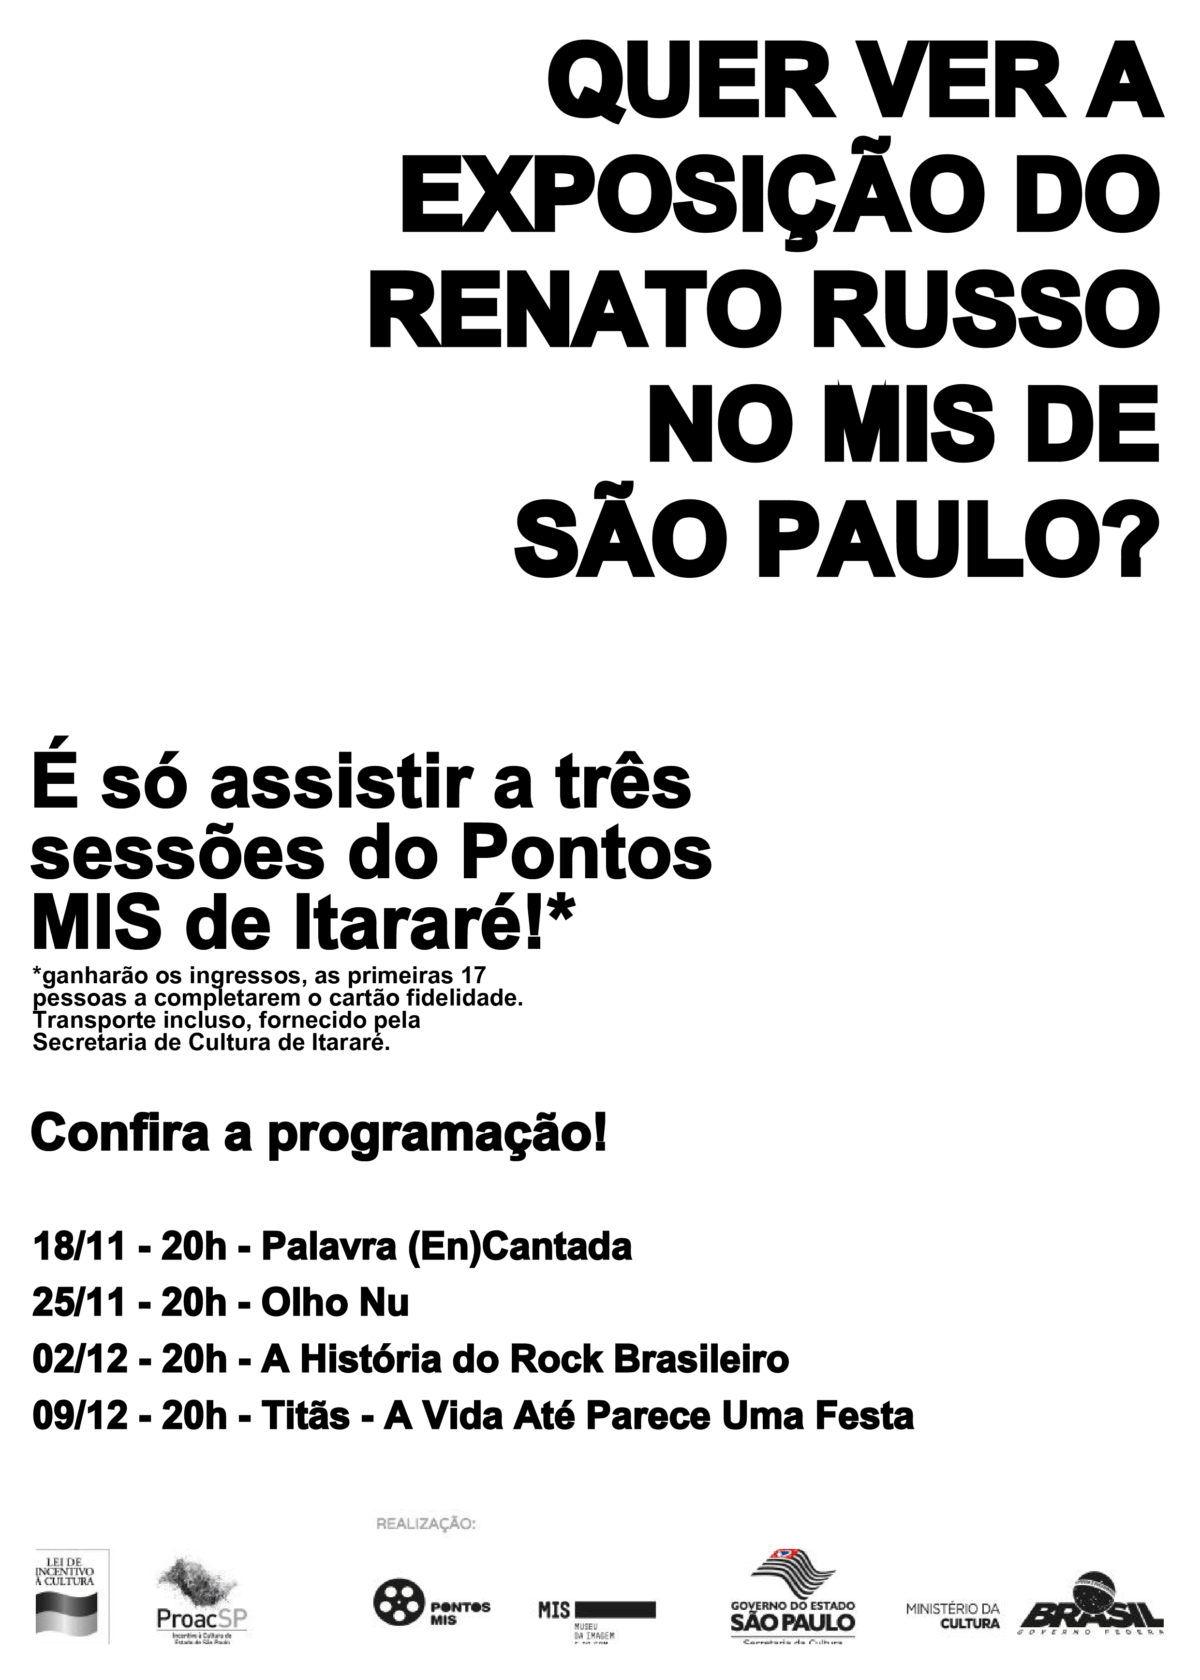 Cultura de Itararé (SP) levará público a megaexposição de Renato Russo em São Paulo (SP)